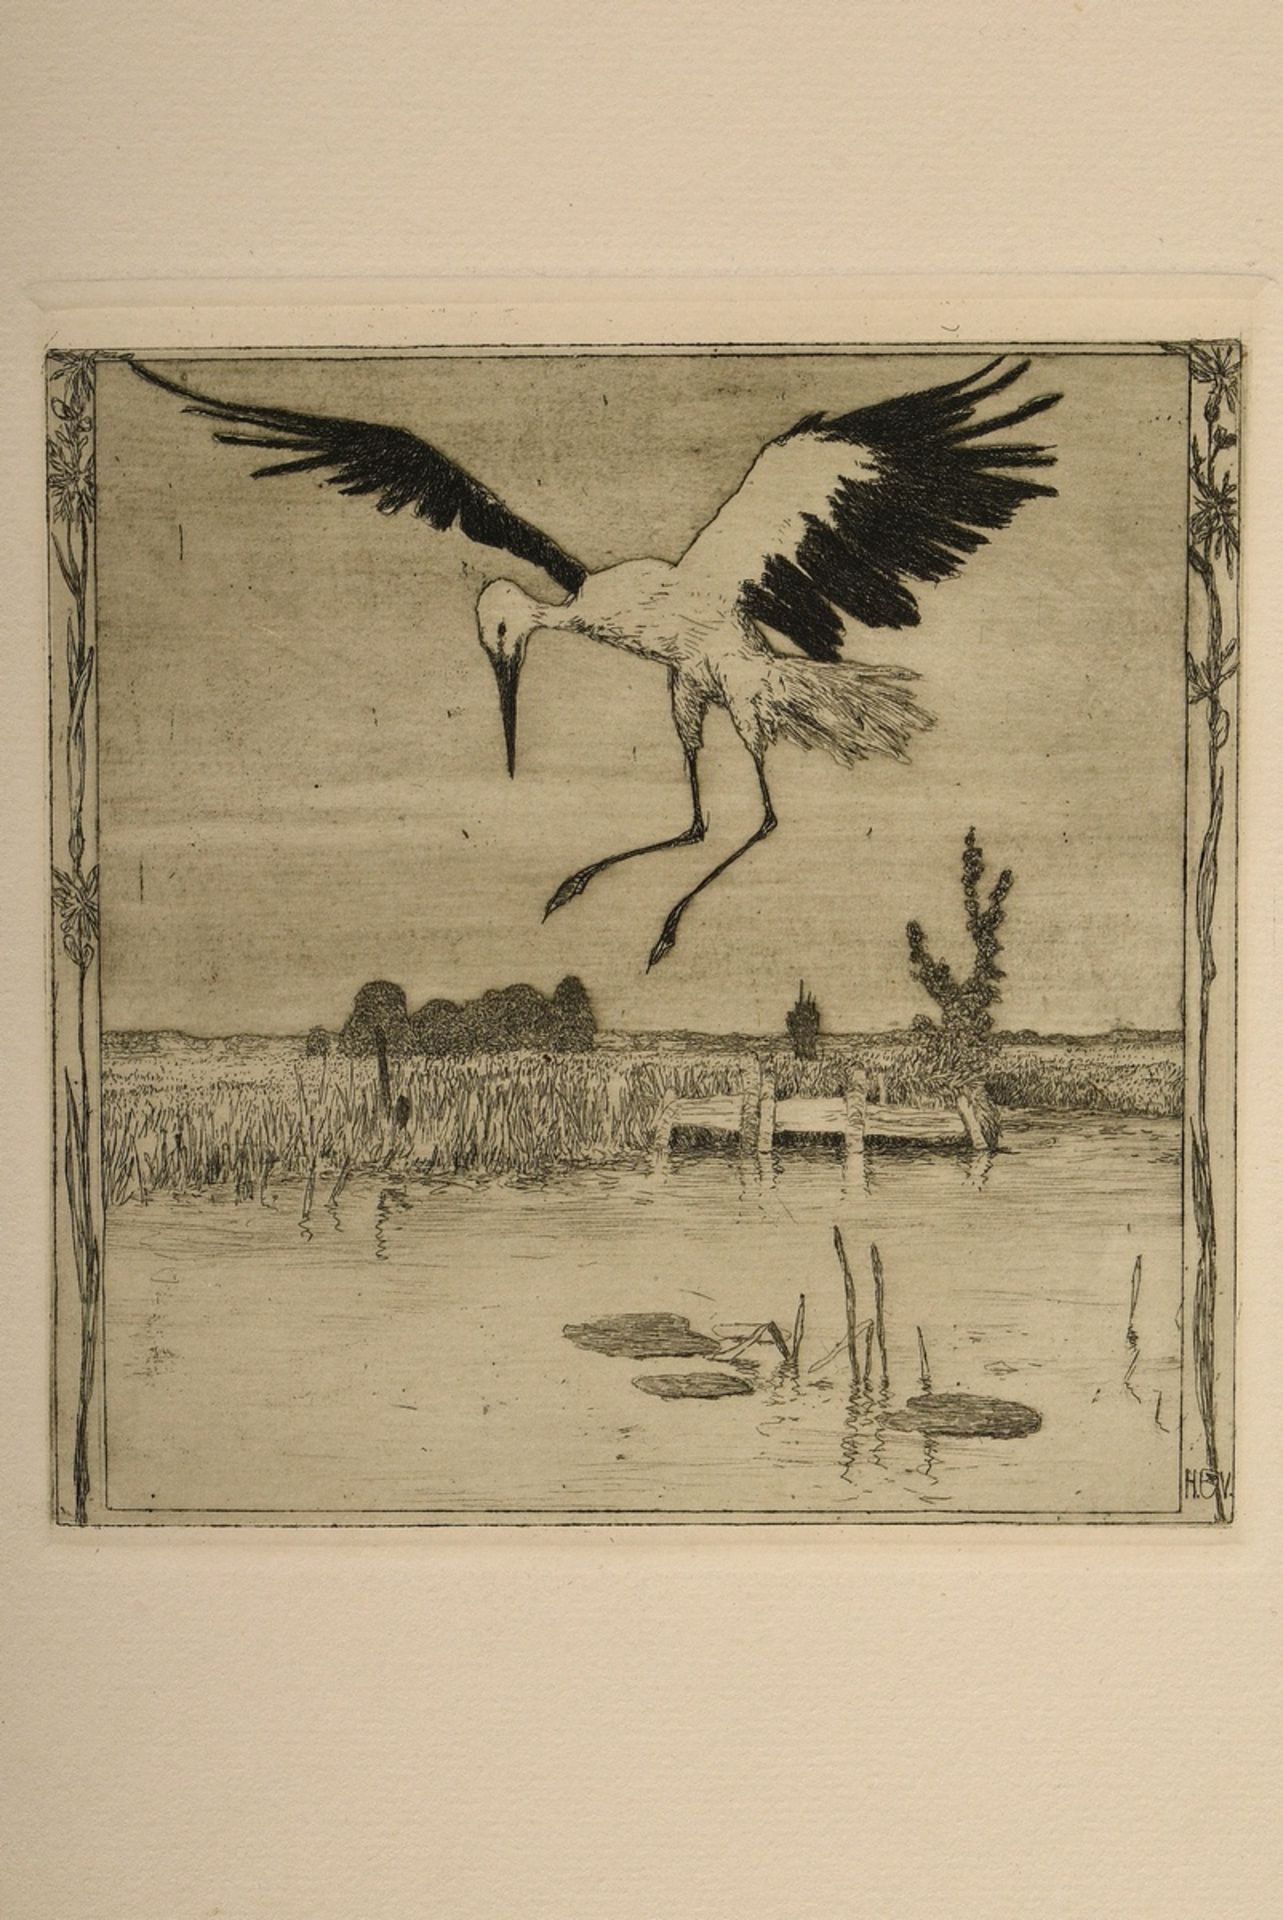 Vogeler, Heinrich (1872-1942) "An den Frühling" 1899/1901, Mappe mit 10 Radierungen und Vorblatt, P - Bild 17 aus 25